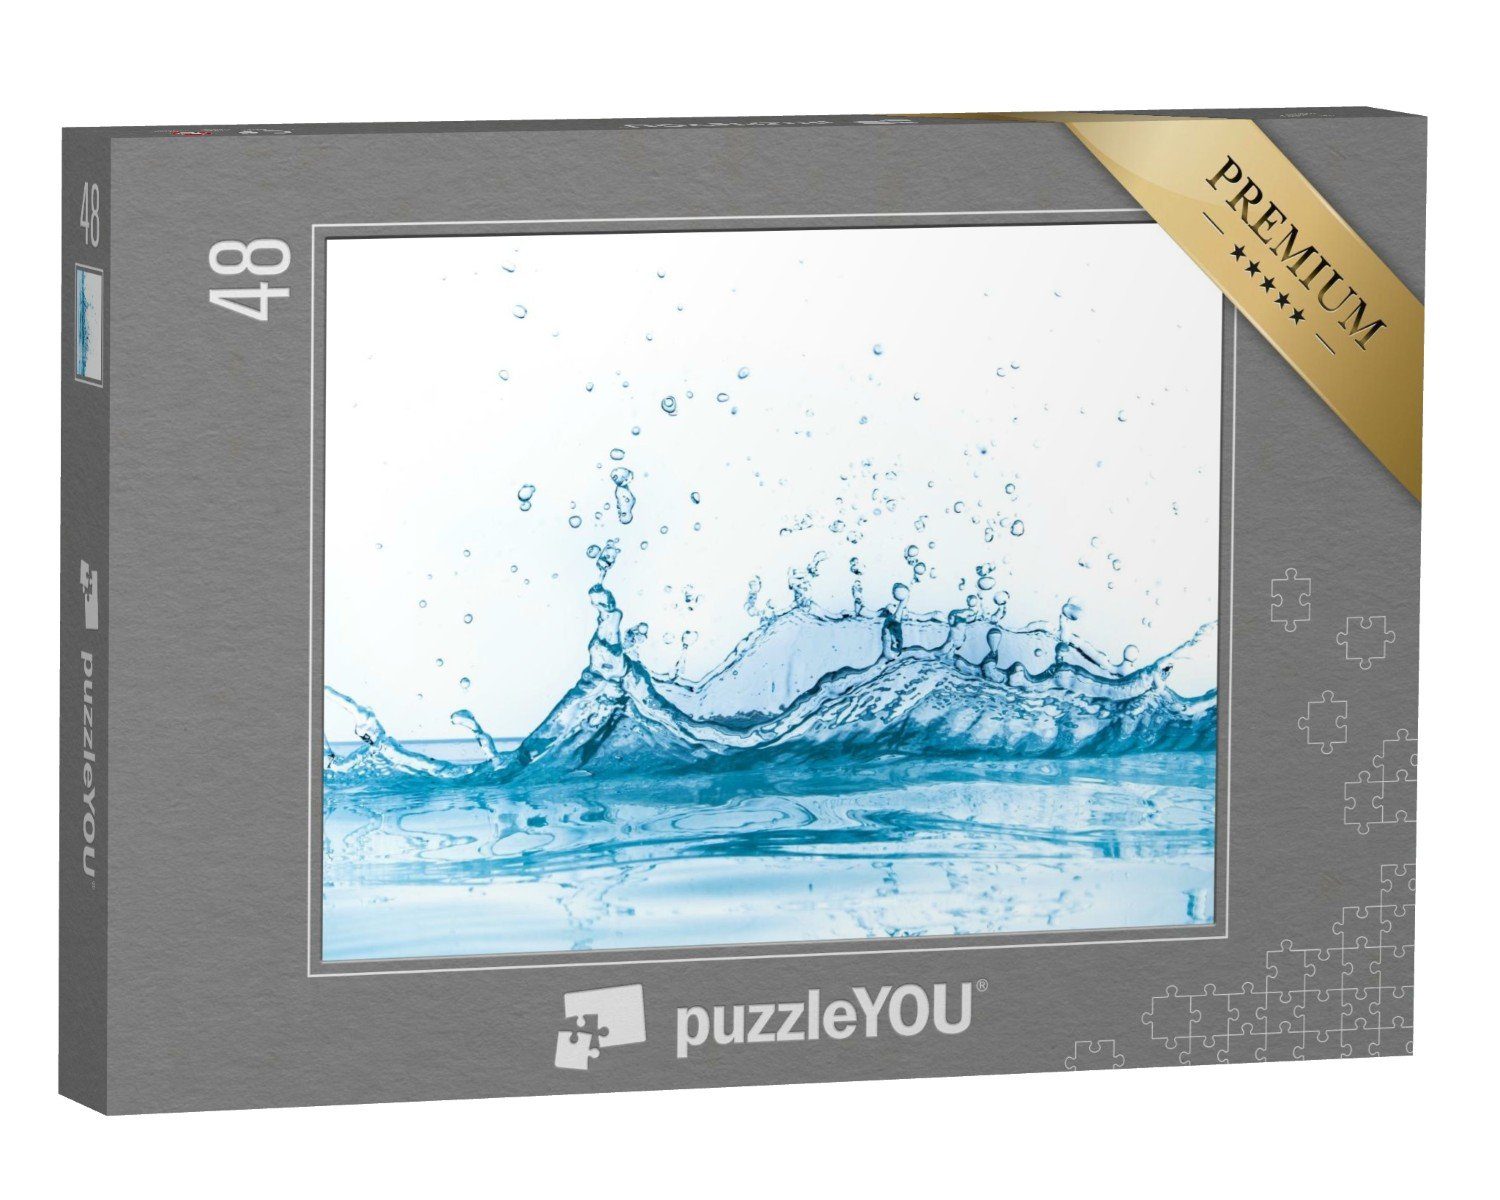 Hintergrund, auf Puzzle 48 Wasser puzzleYOU Puzzleteile, weißem Wasserspritzer puzzleYOU-Kollektionen isoliert